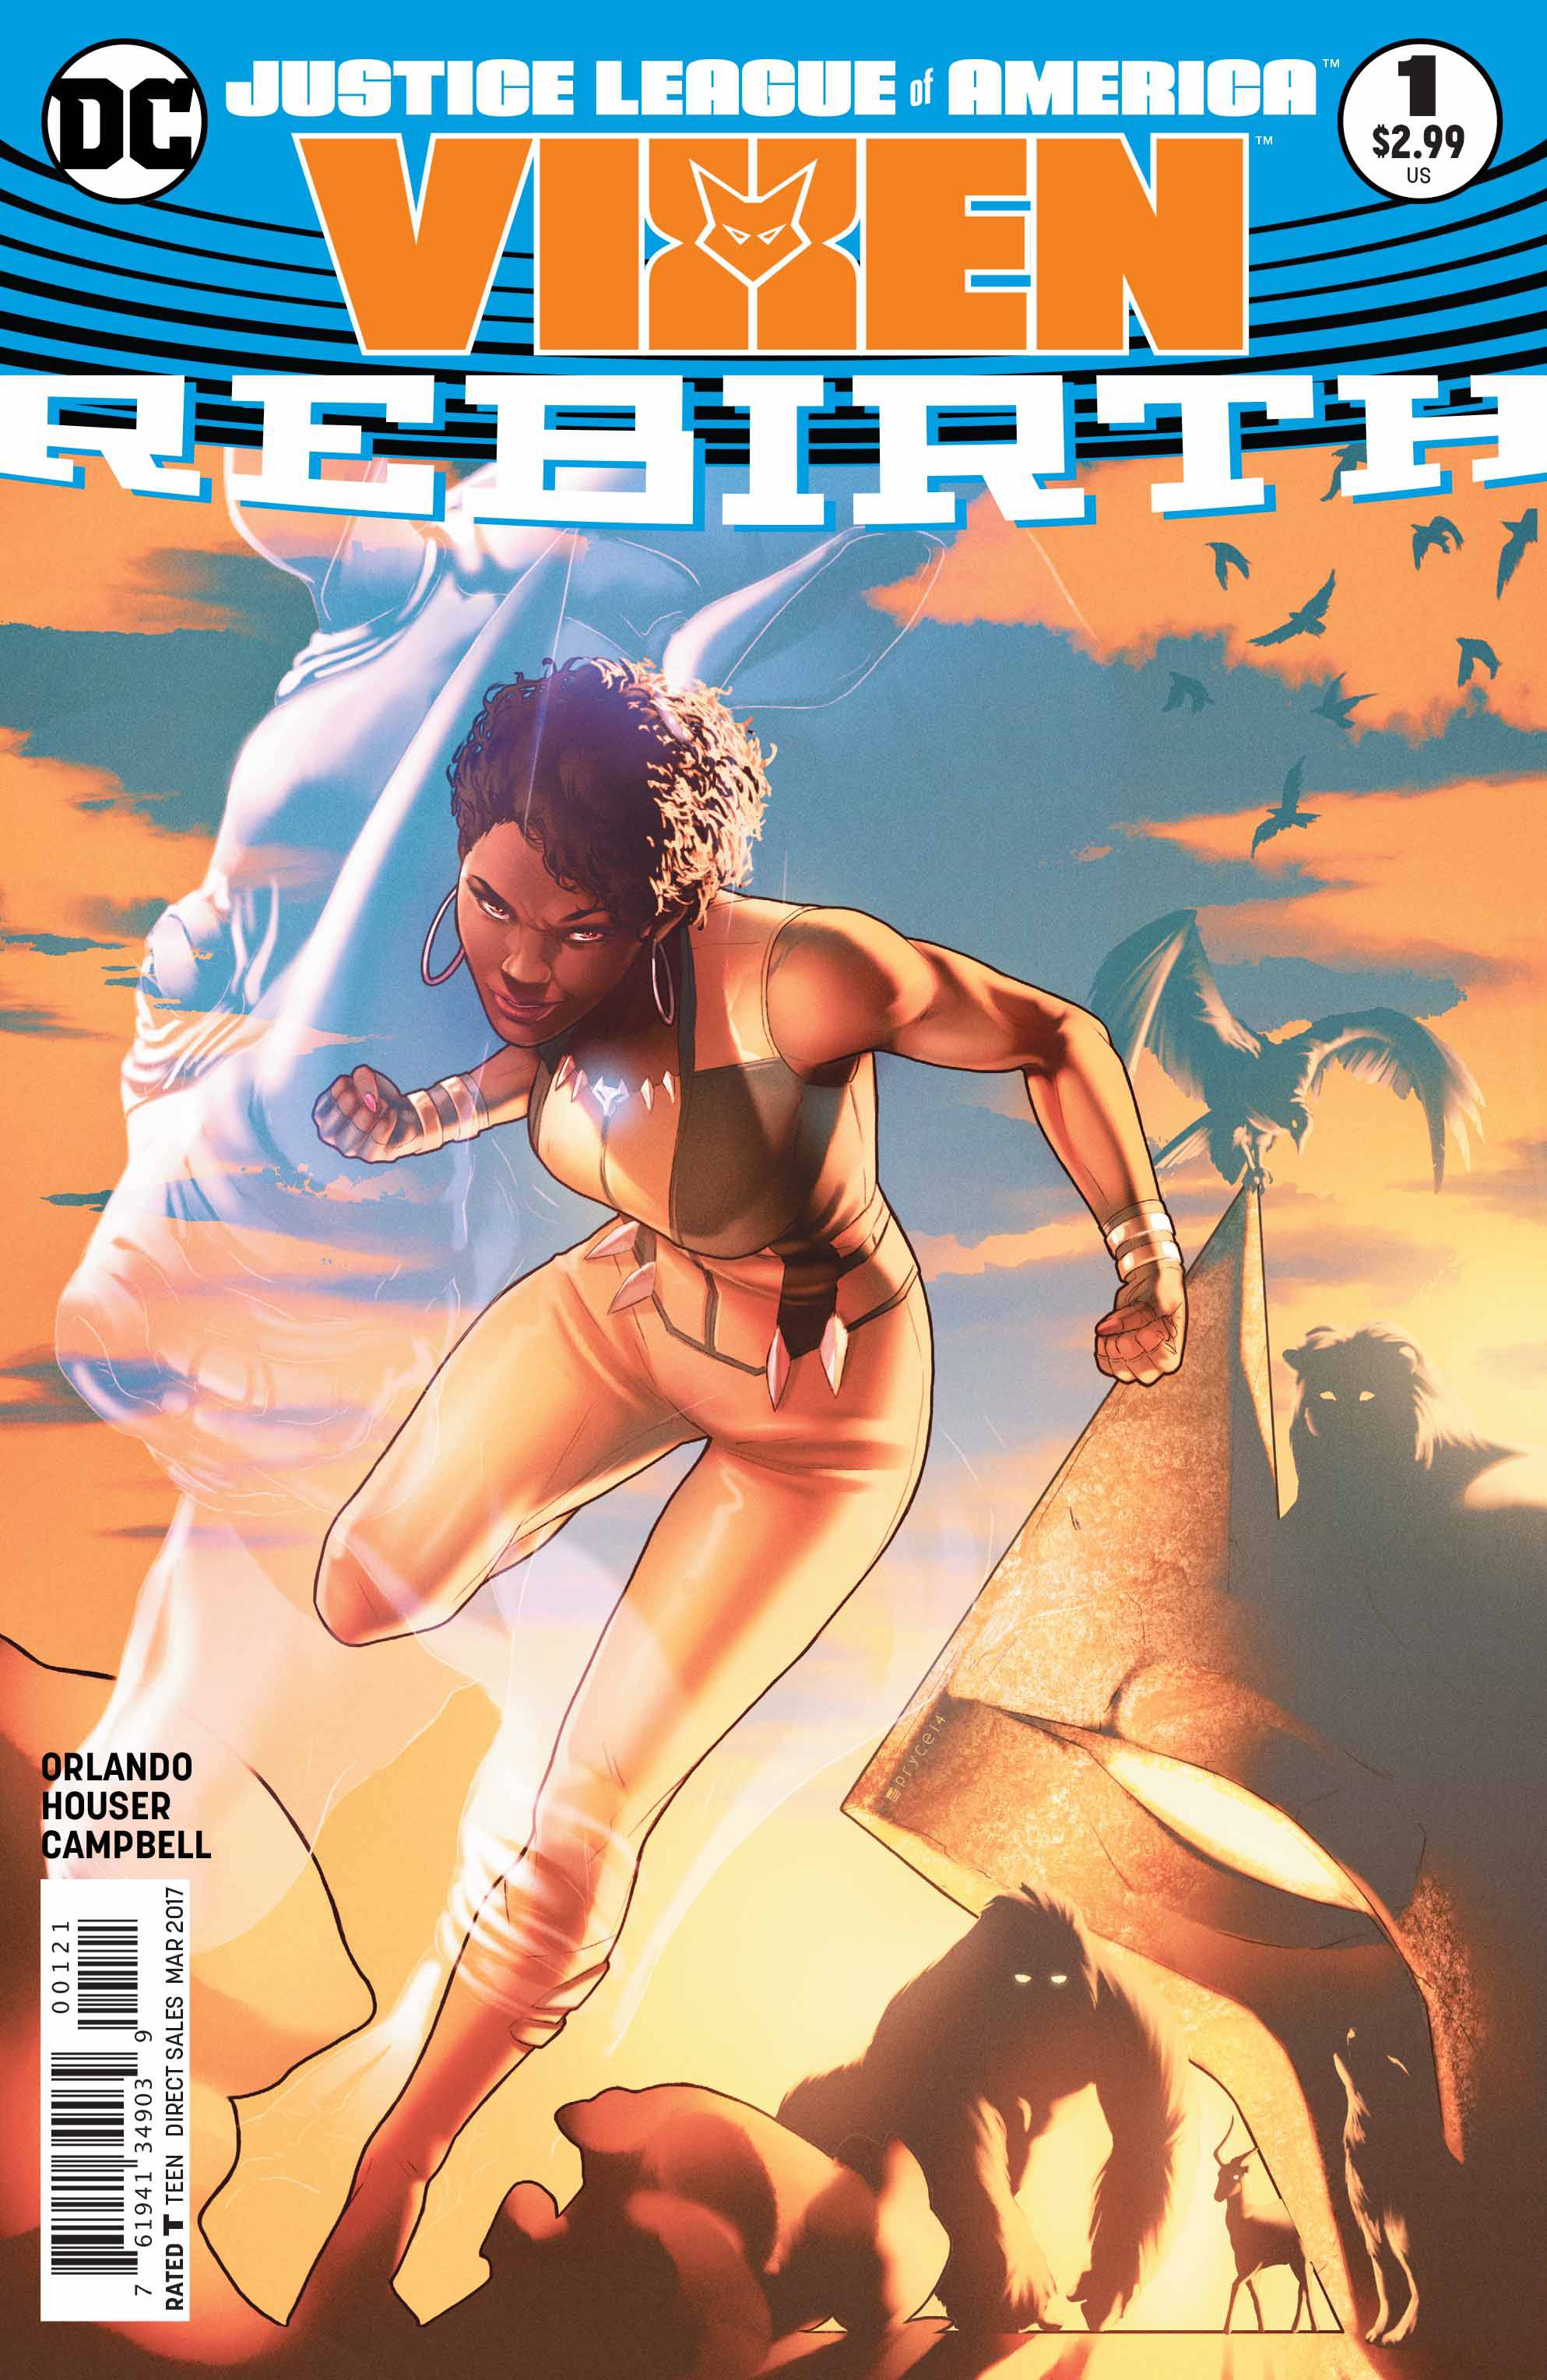 Justice League of America Vixen Rebirth #1 Variant Edition